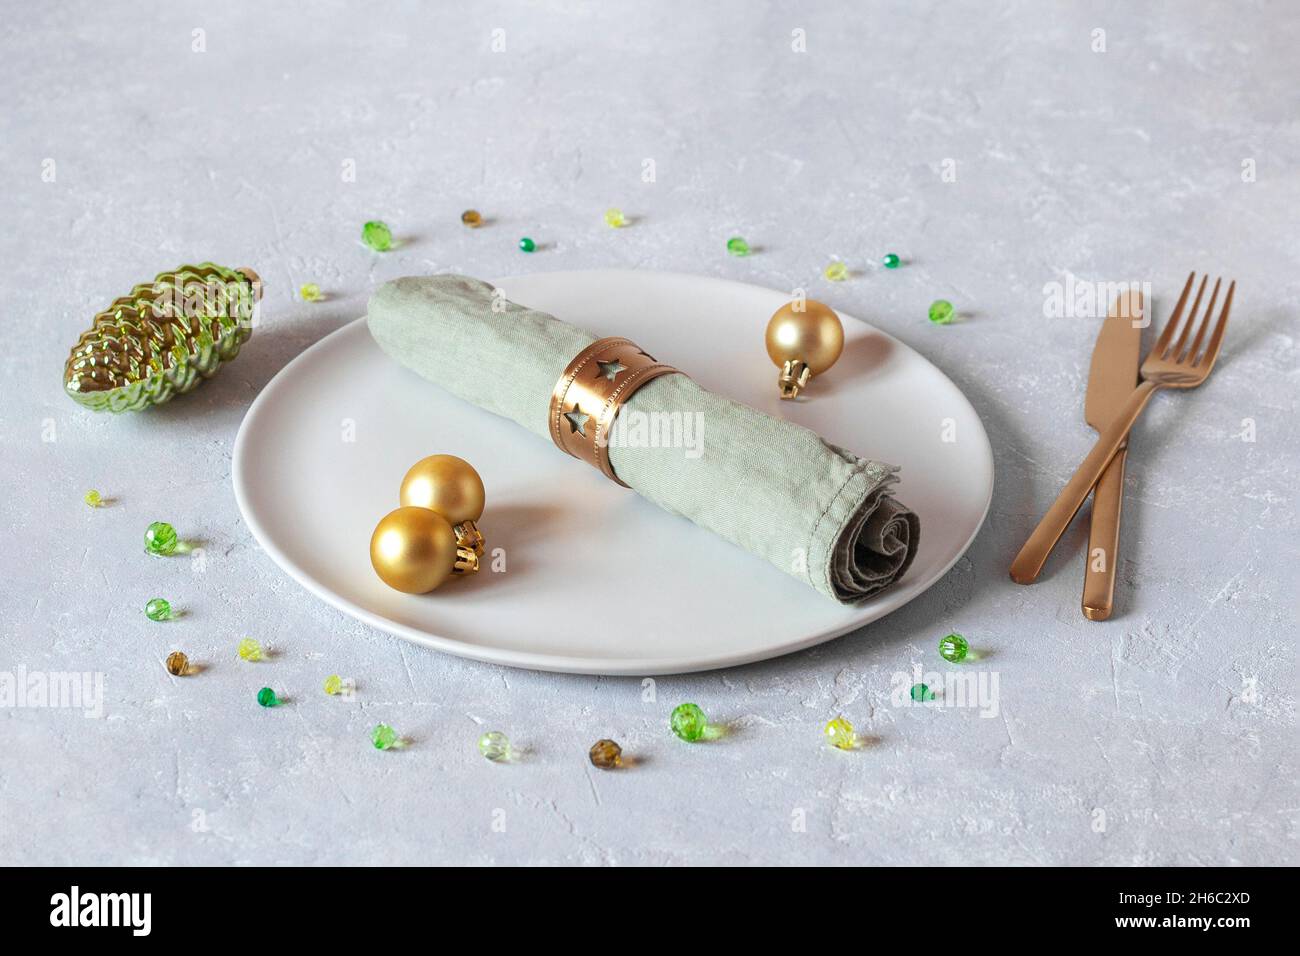 Plato, servilleta y cubiertos decorados para la cena de Navidad, colores dorados y verdes, idea para la tarjeta de Navidad Foto de stock